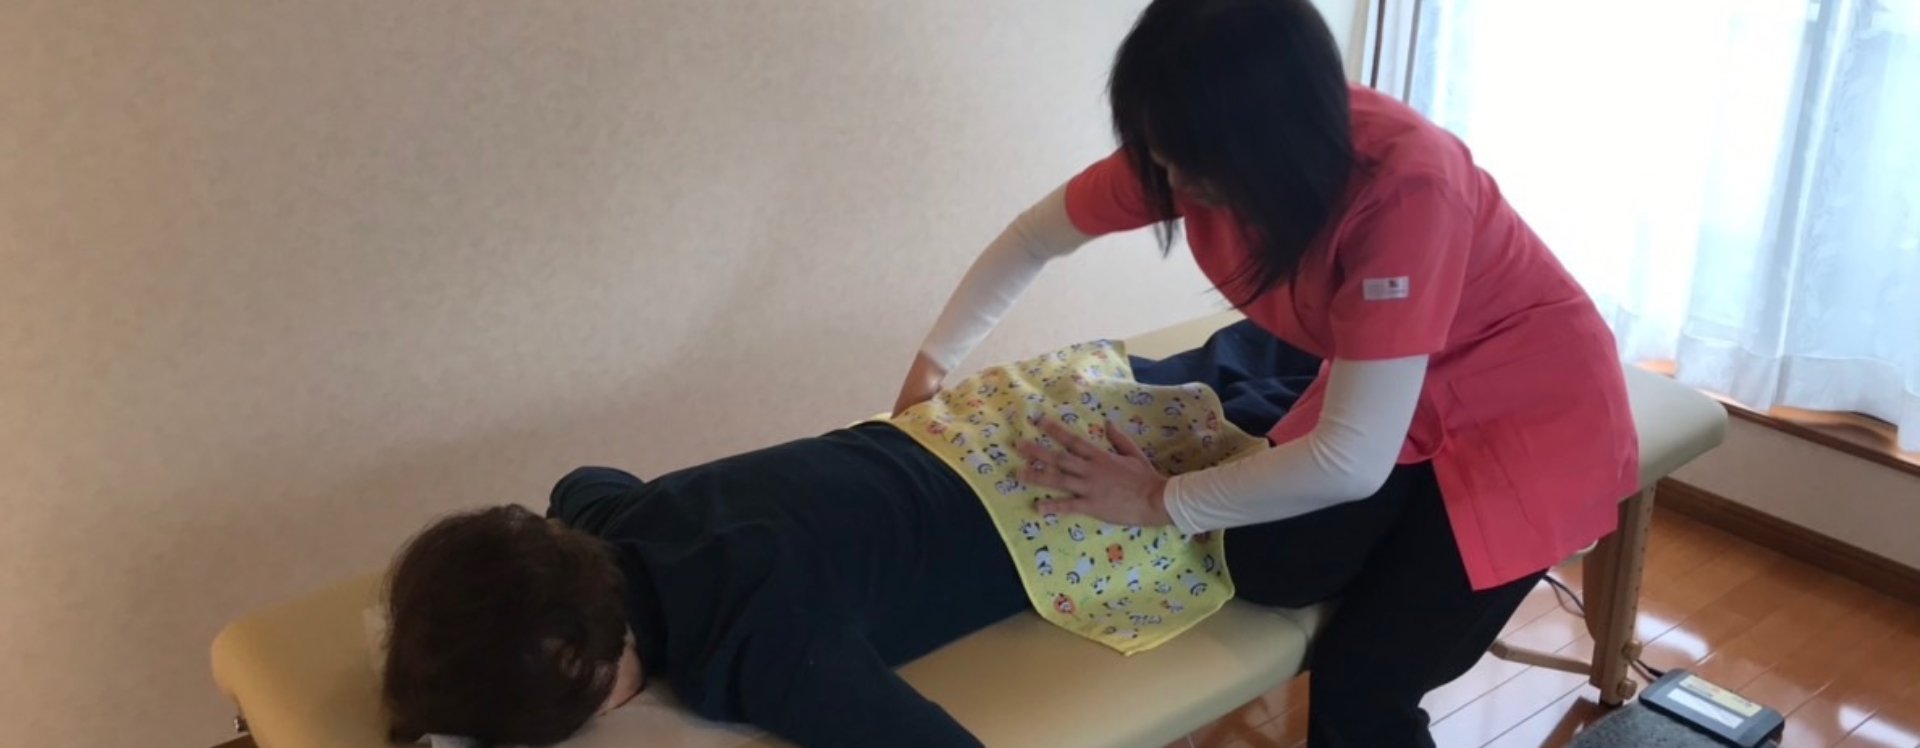 岡崎で整体治療なら、らくや整体院。女性専用、矯正と癒しのリラクゼーションサロン